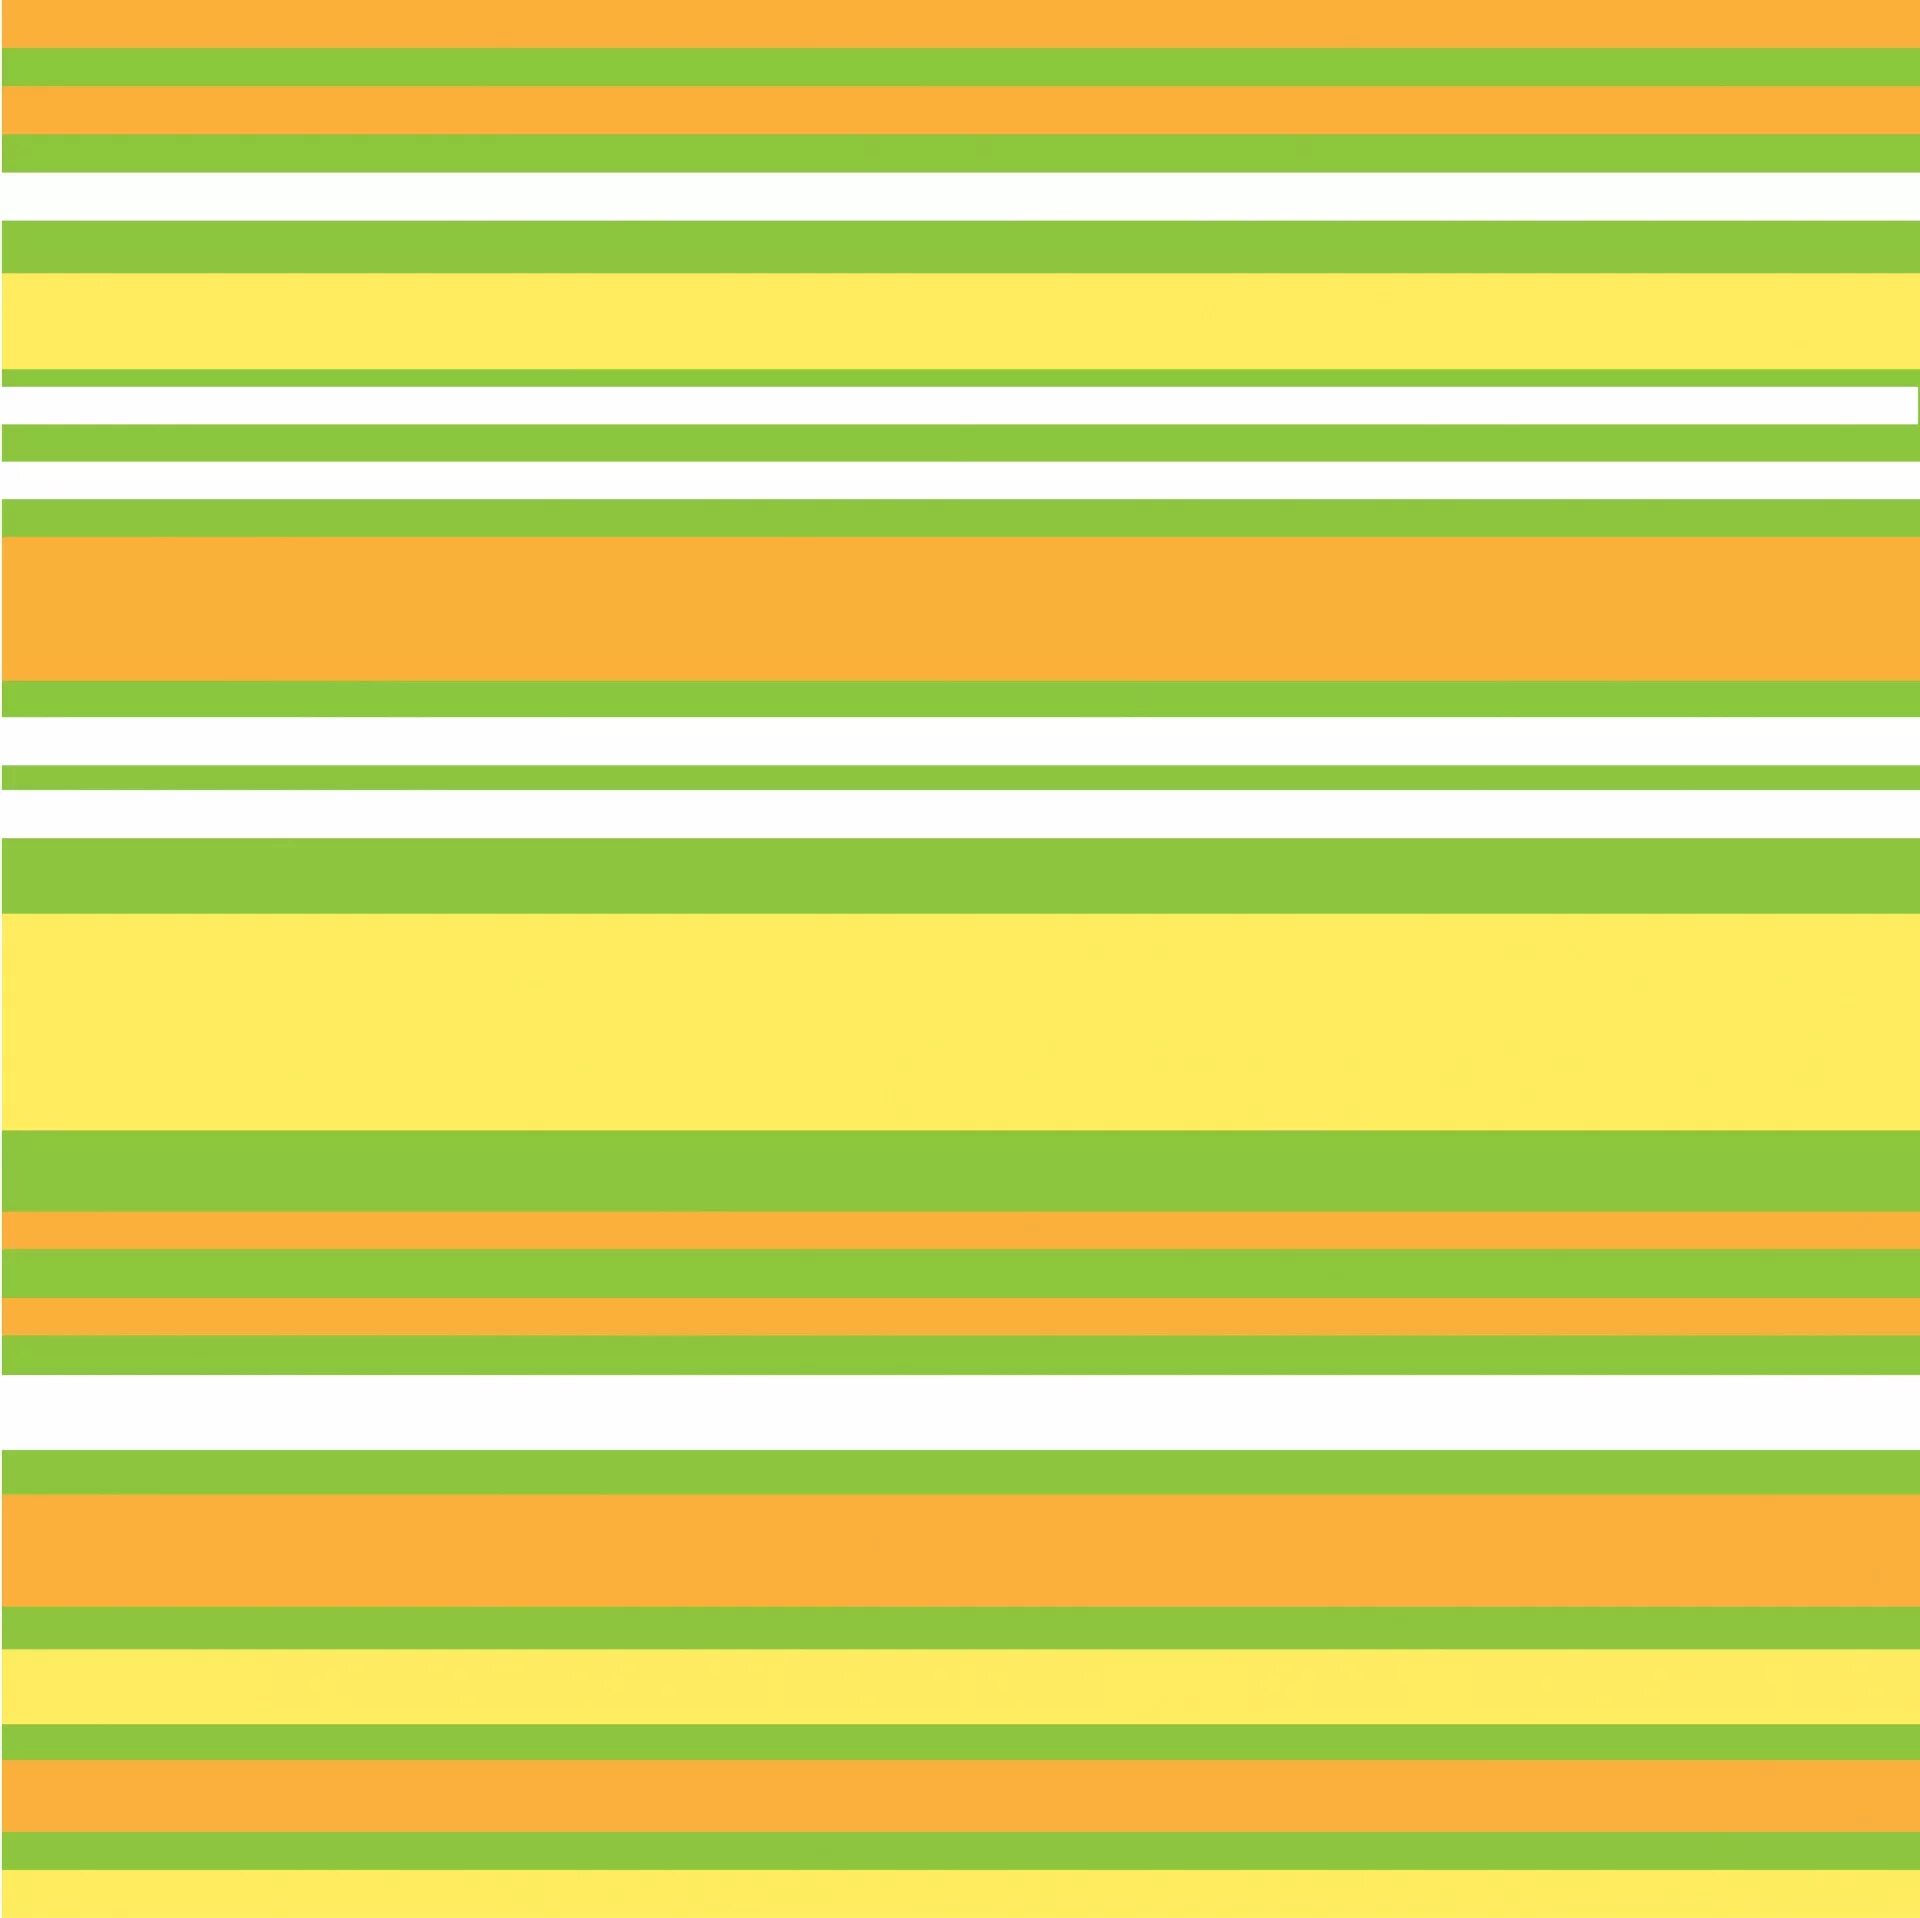 Вертикальные желтые полосы. Зеленая полоска. Желто зеленые полоски. Цветные полоски. Фон зеленый полосатый.